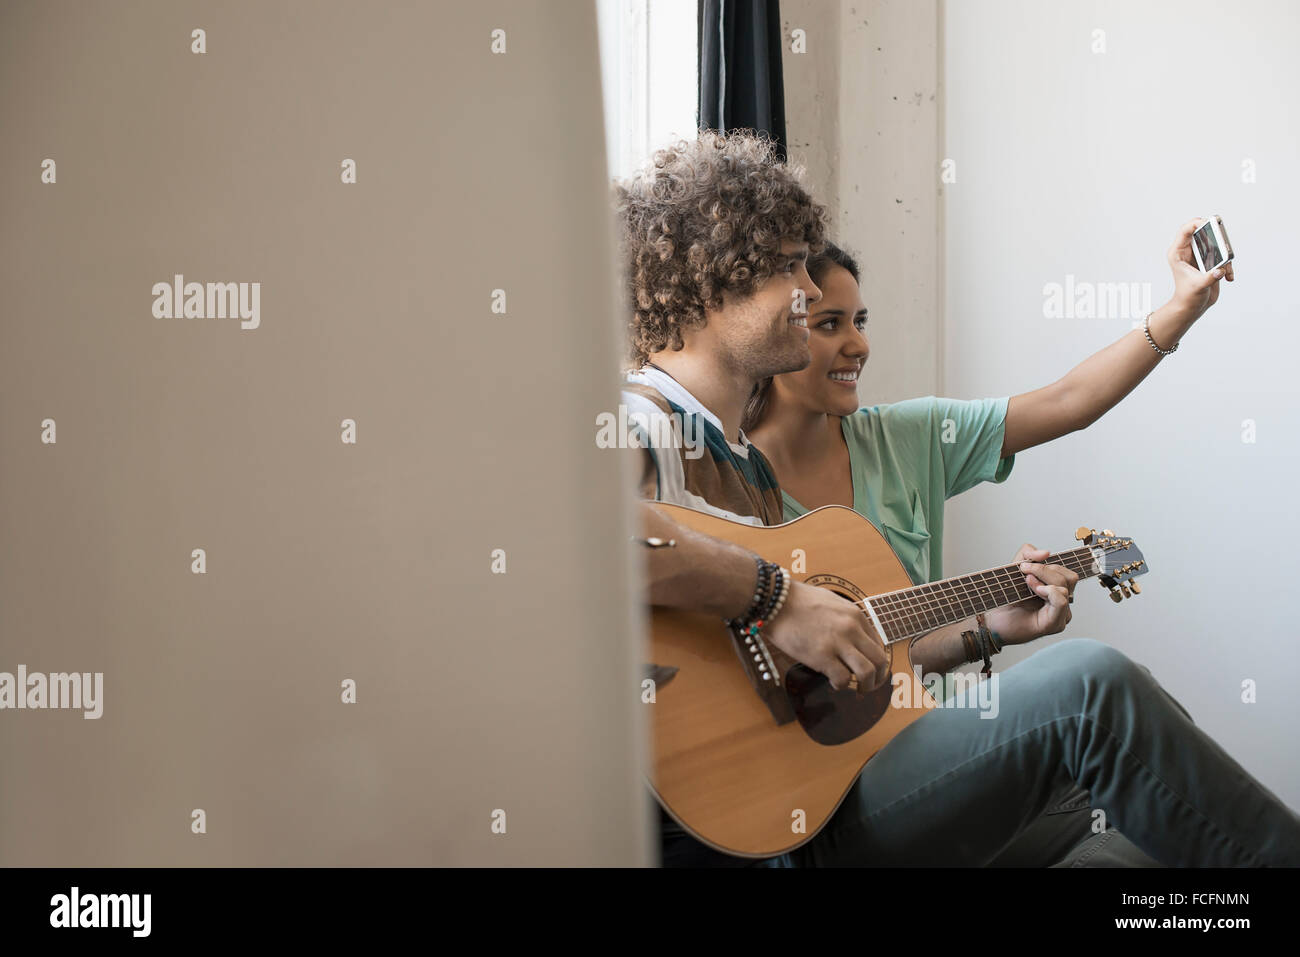 Loft-lebendigen. Ein junger Mann spielt Gitarre und eine Frau neben ihm unter einem selfy mit einem Smartphone. Stockfoto